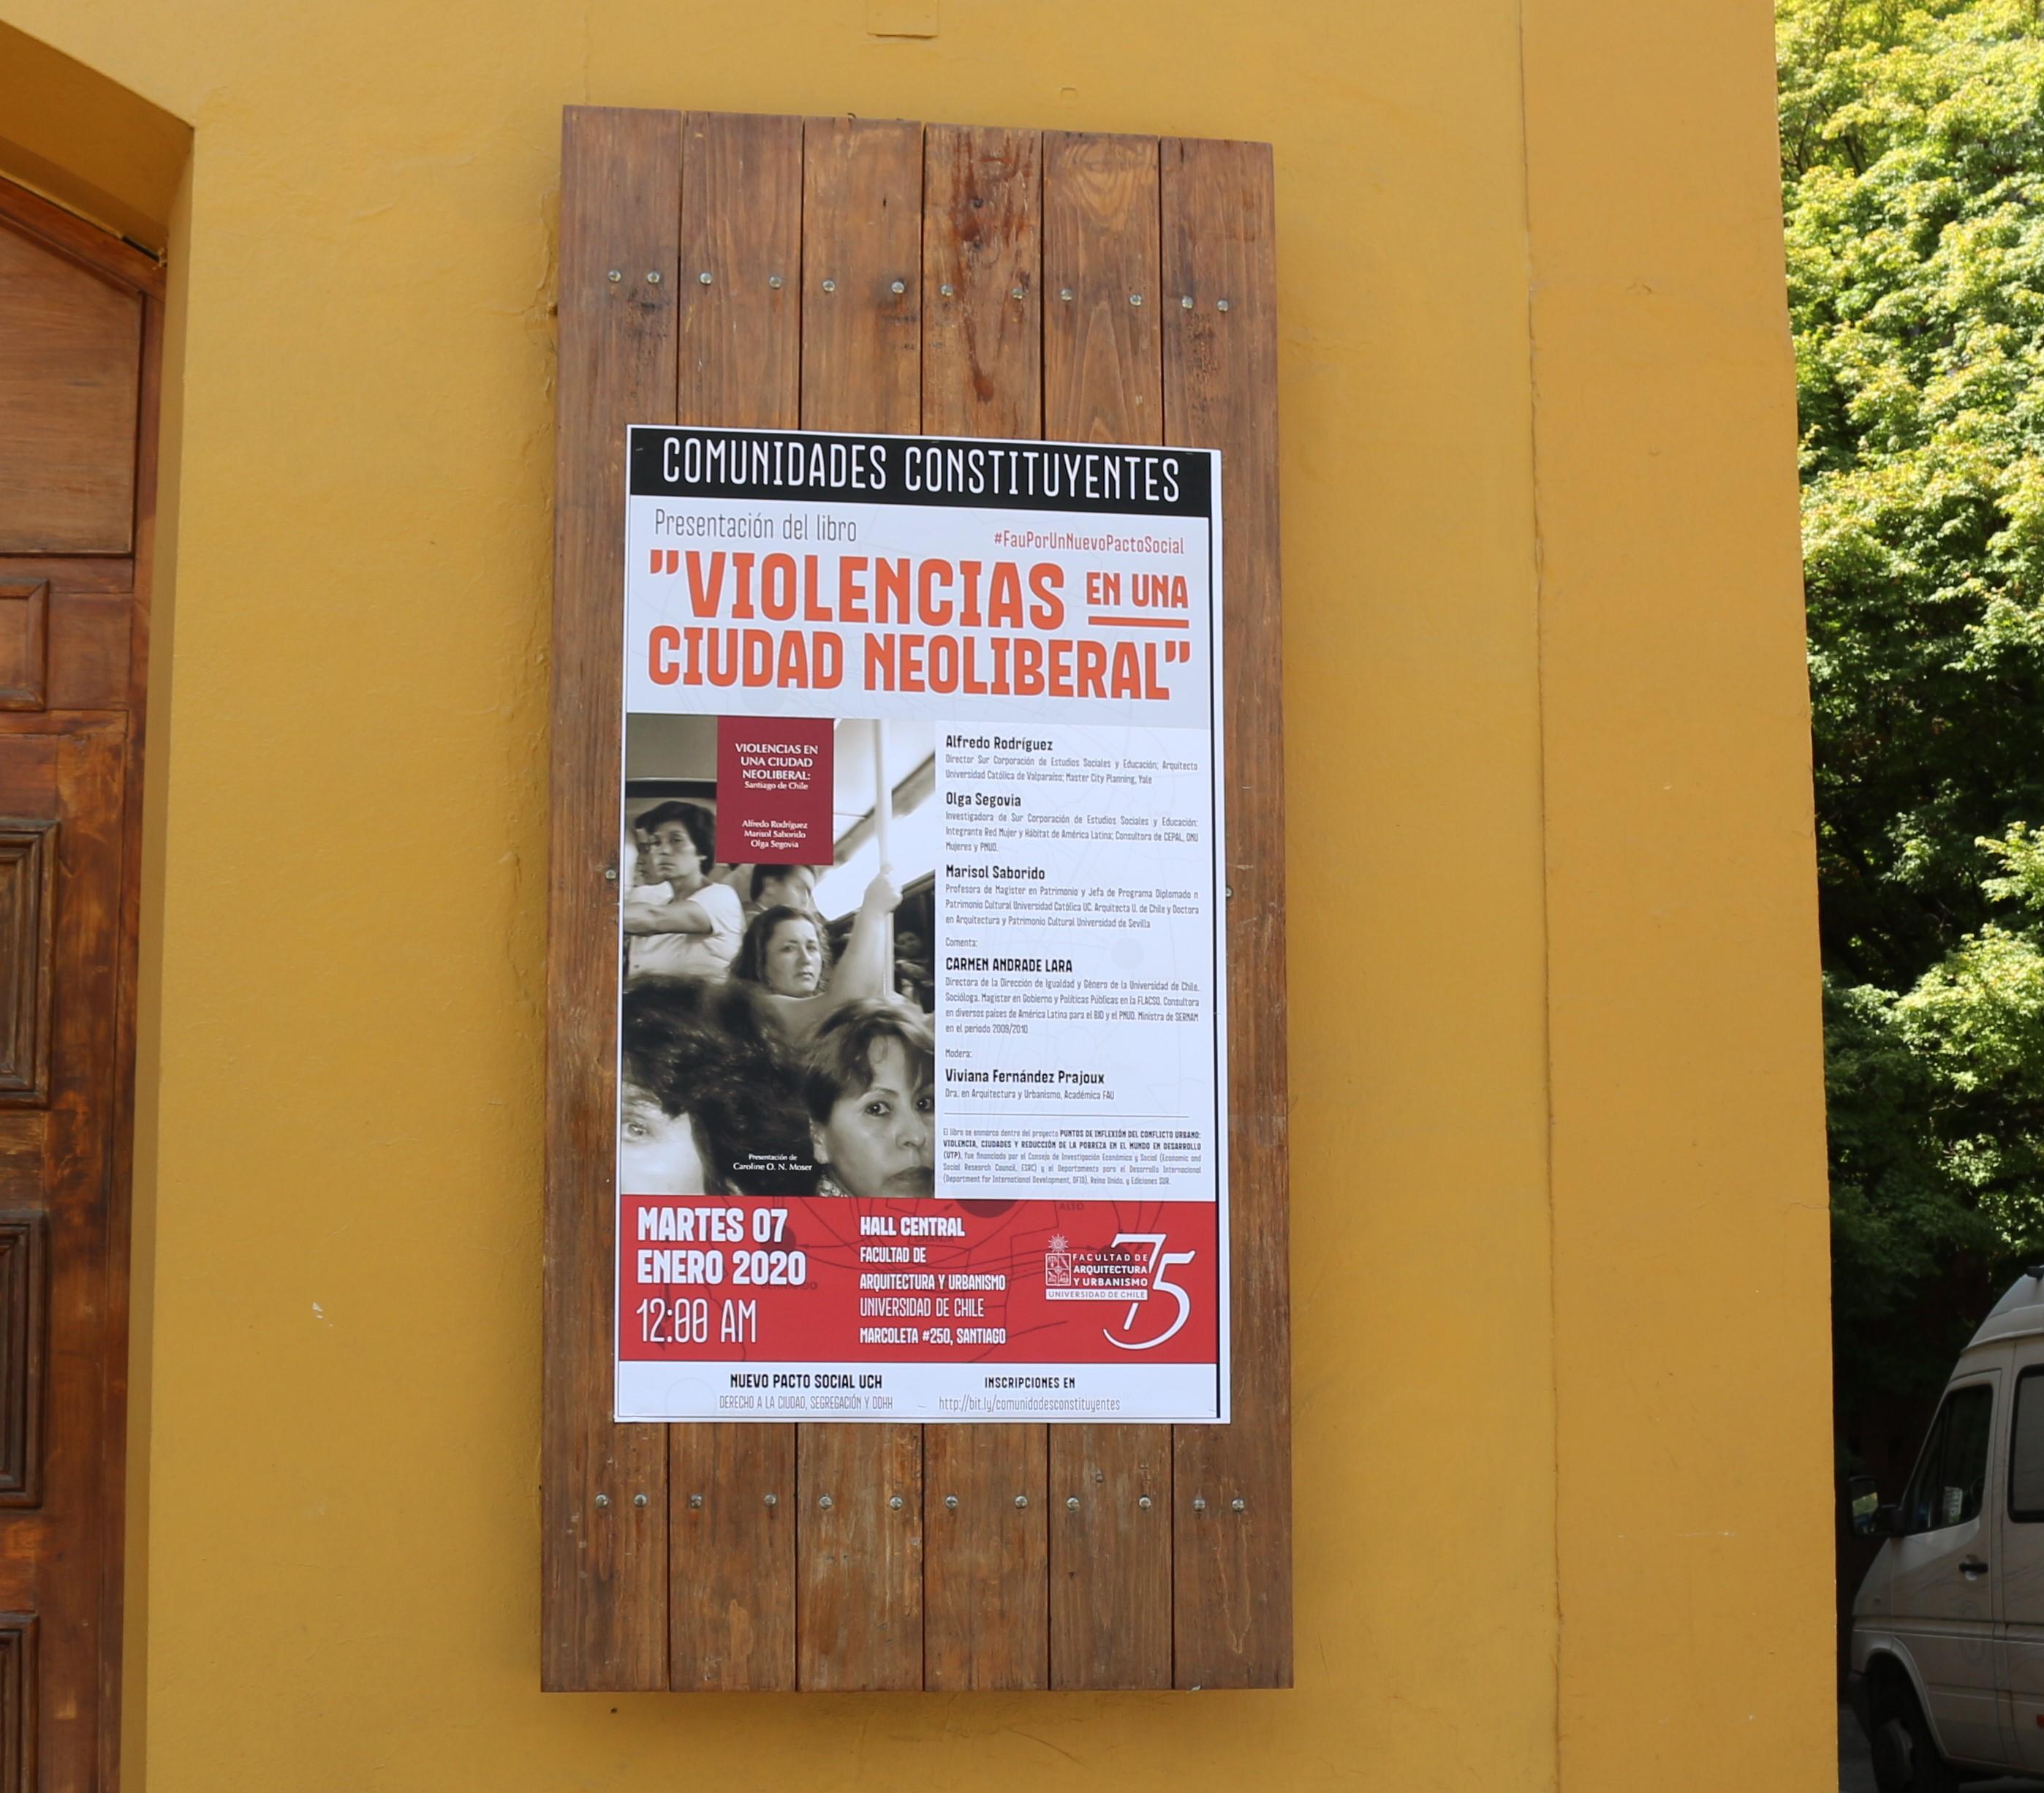 El conversatorio organizado por la FAU, abordó junto con los autores, los contenidos del libro sobre violencias en la ciudad de Santiago desde la perspectiva actual. 